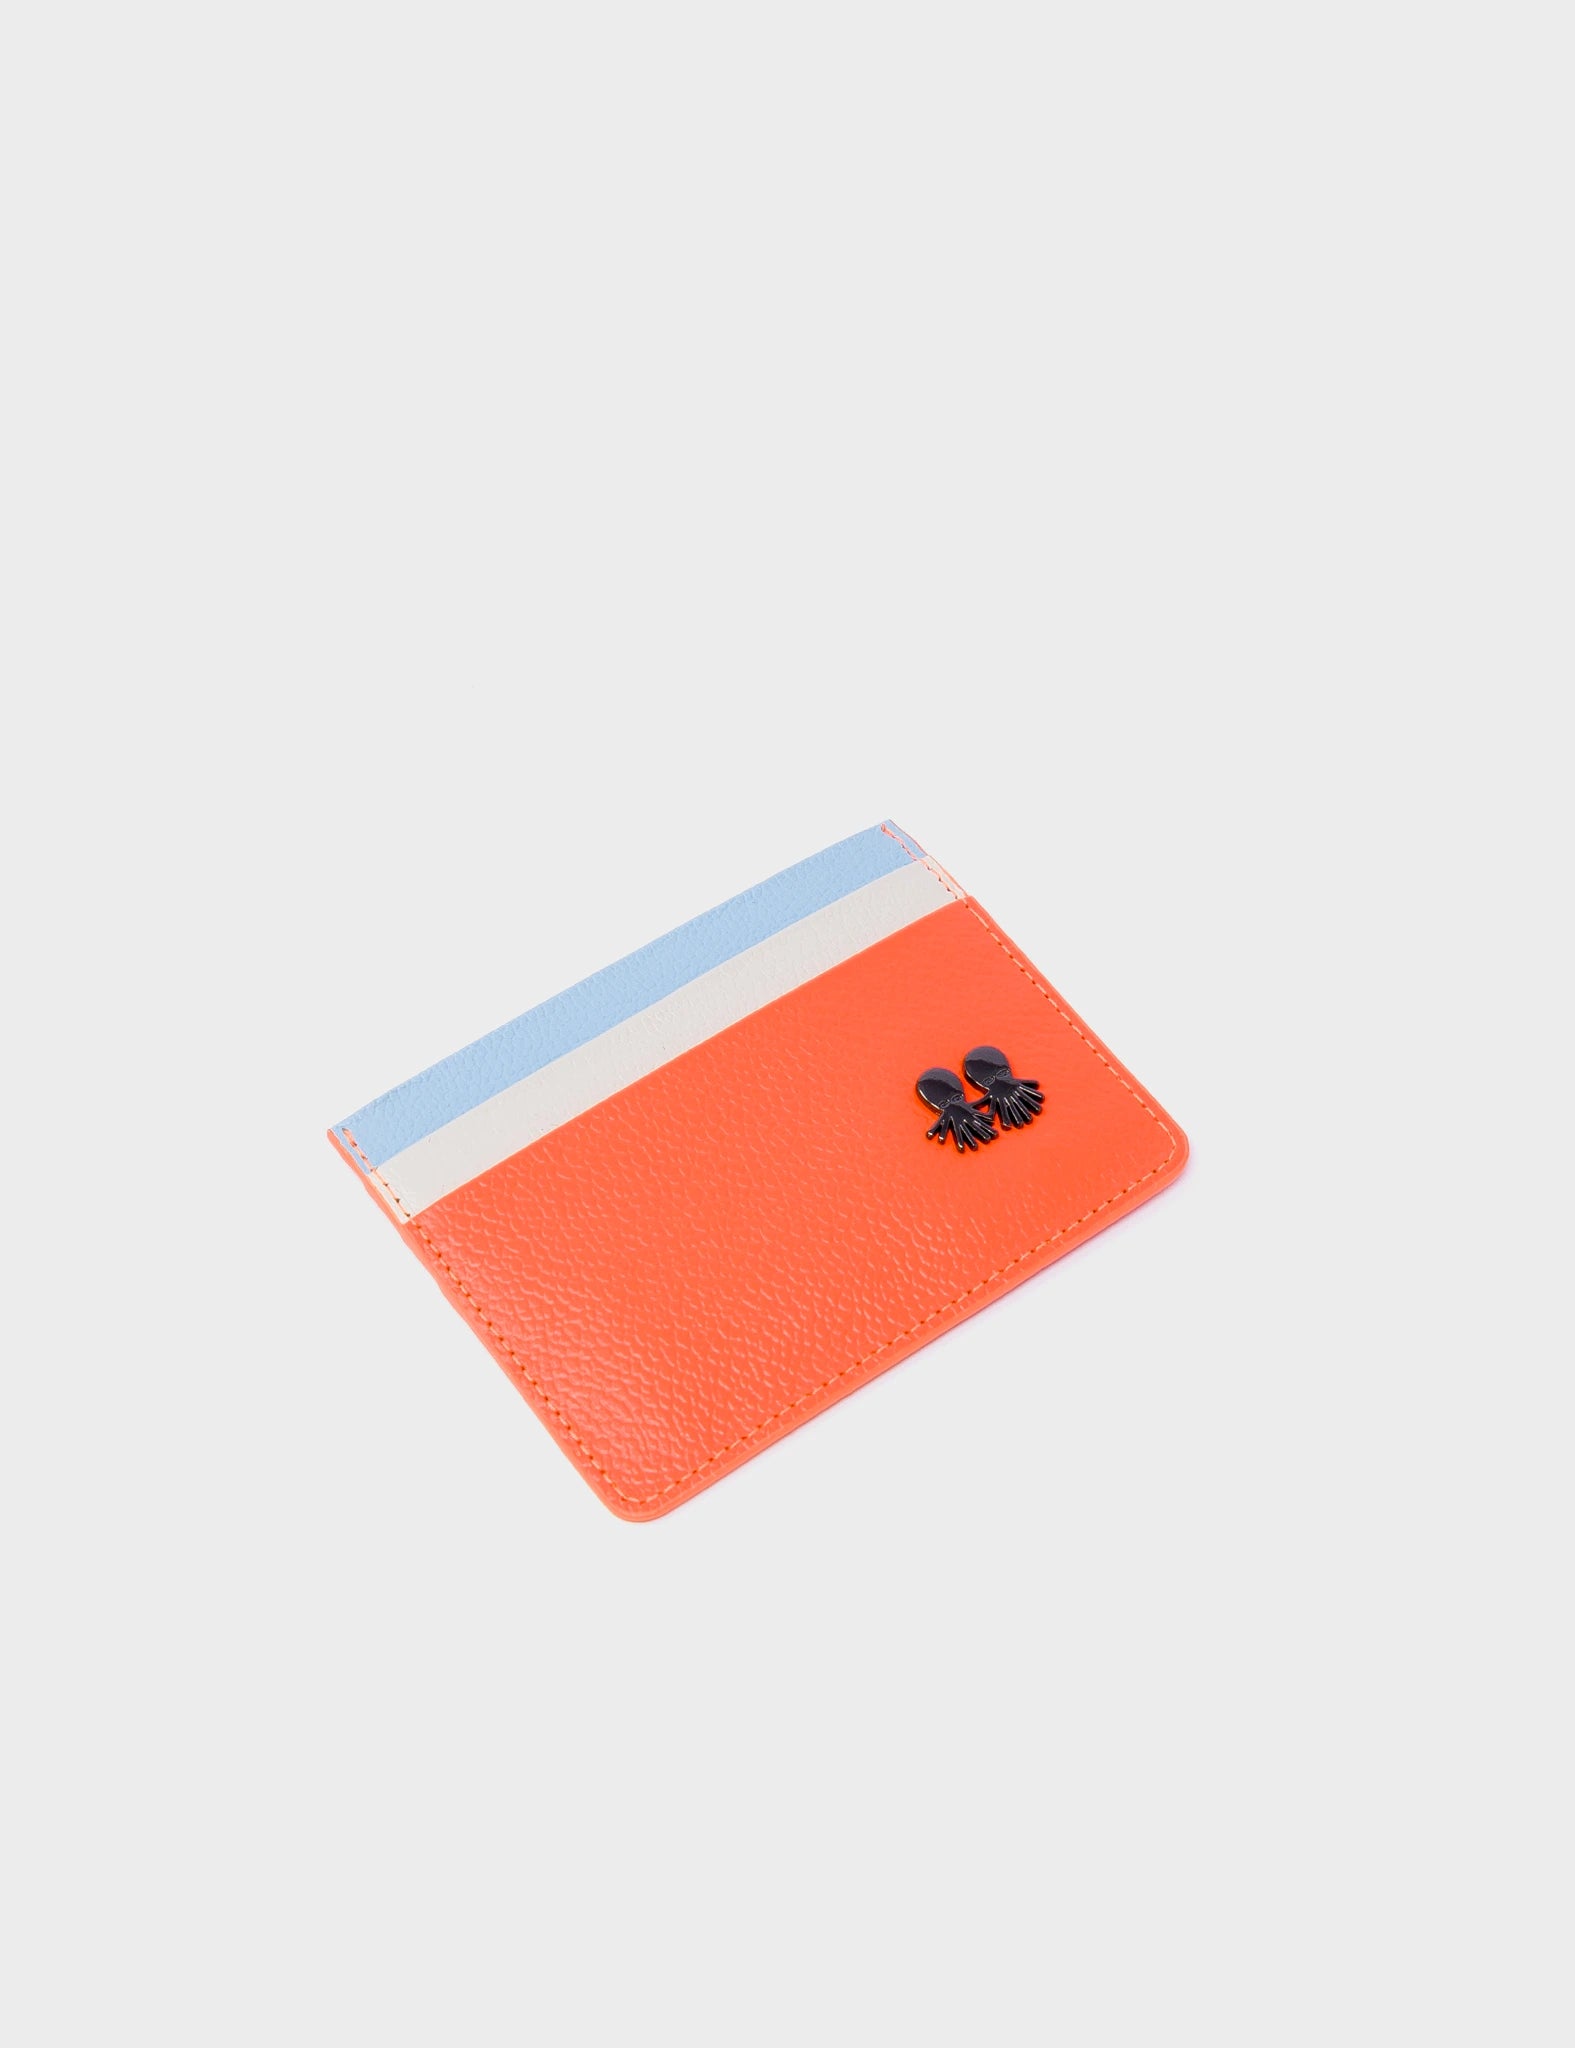 Filium Wallet Neon Orange And Cream Leather Cardholder - Eyes Pattern Debossed - Side 